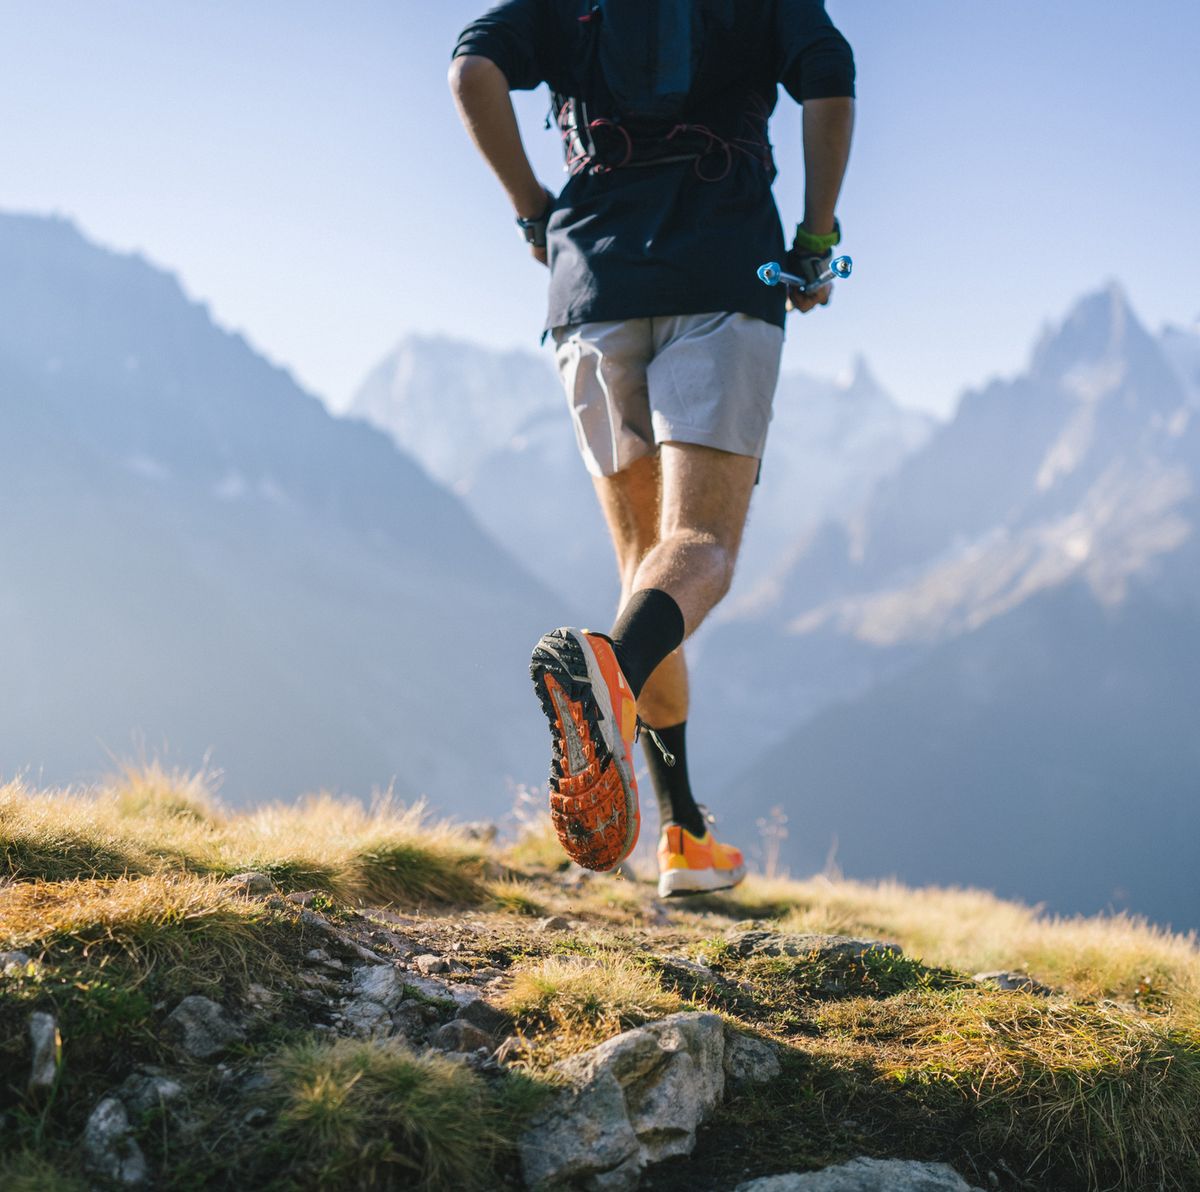 Las mejores zapatillas de Trail Running 2022 para distancias cortas 